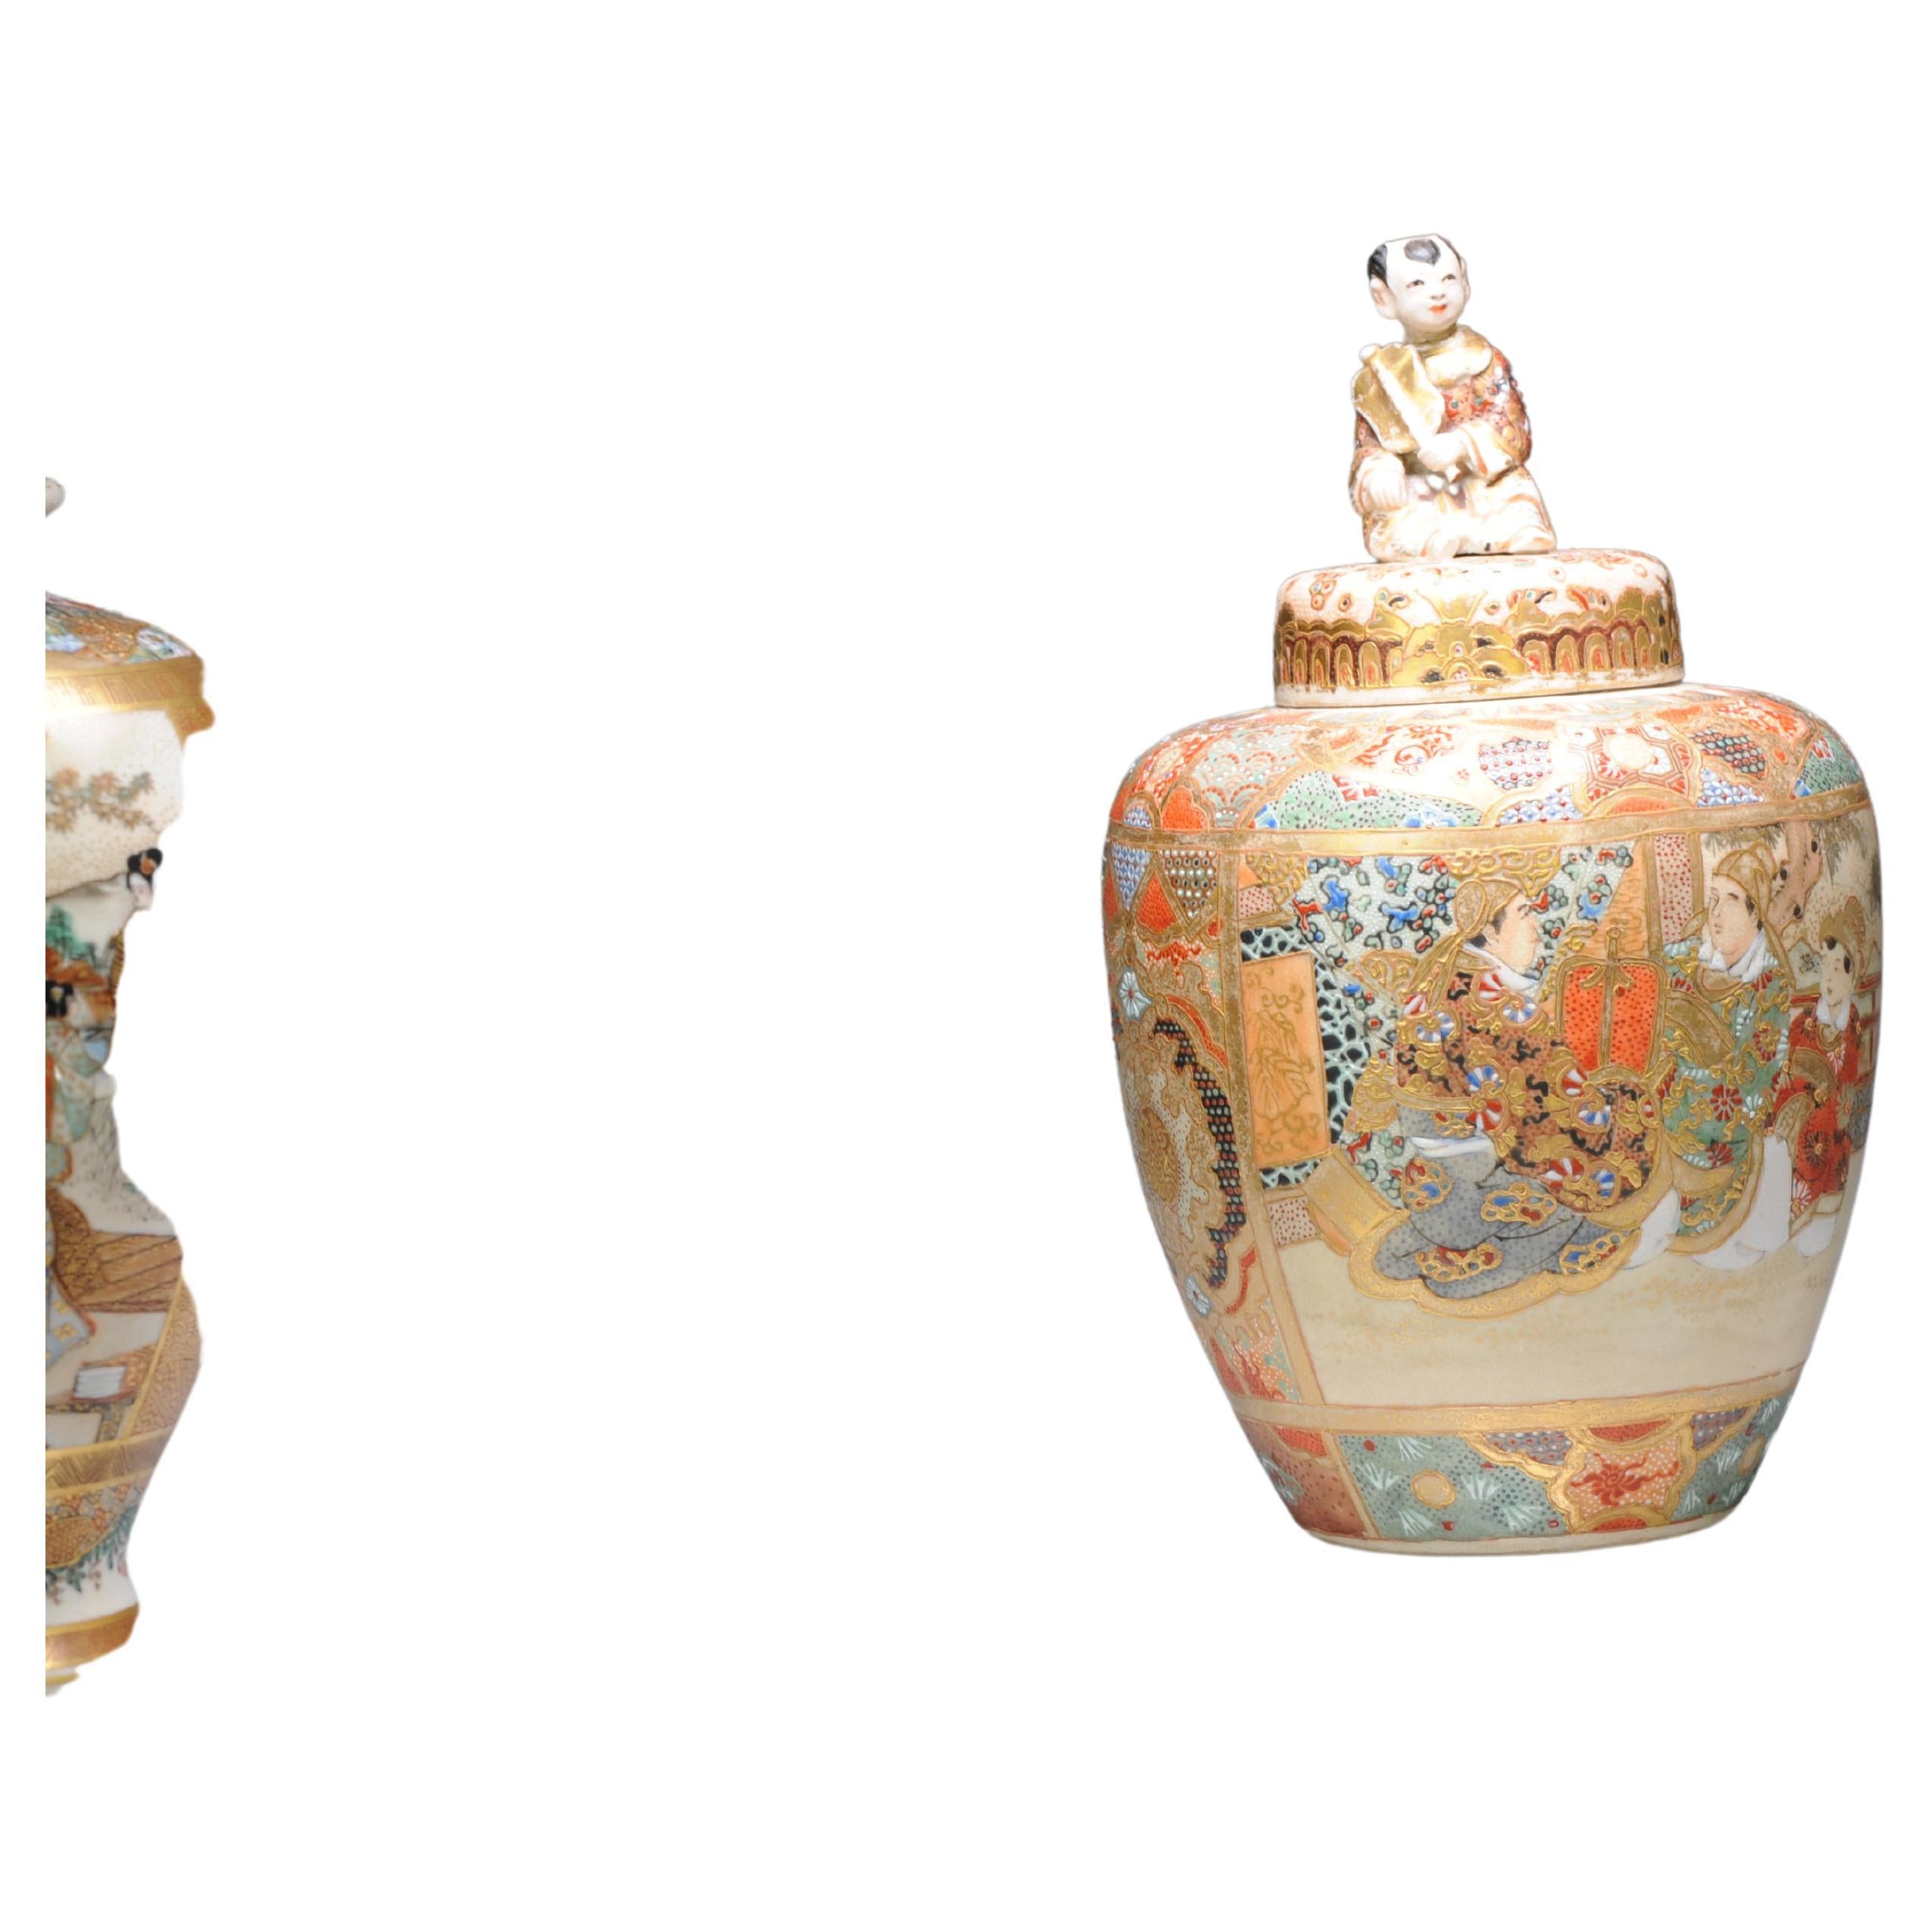 Ancienne jarre japonaise Satsuma datant d'environ 1900 avec des figures richement décorées Non marquée